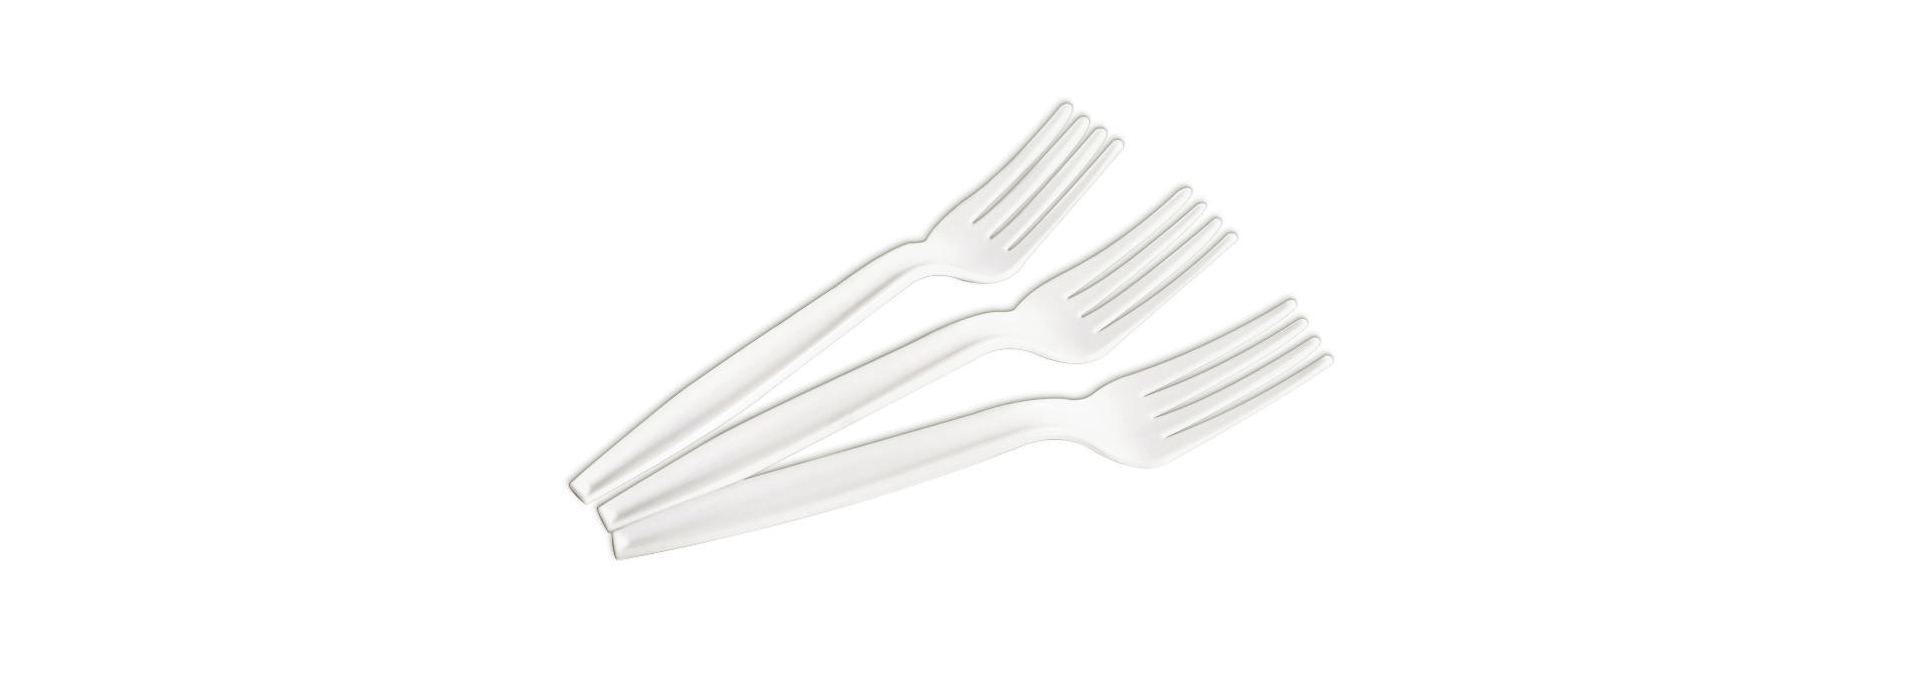 PLA-fork